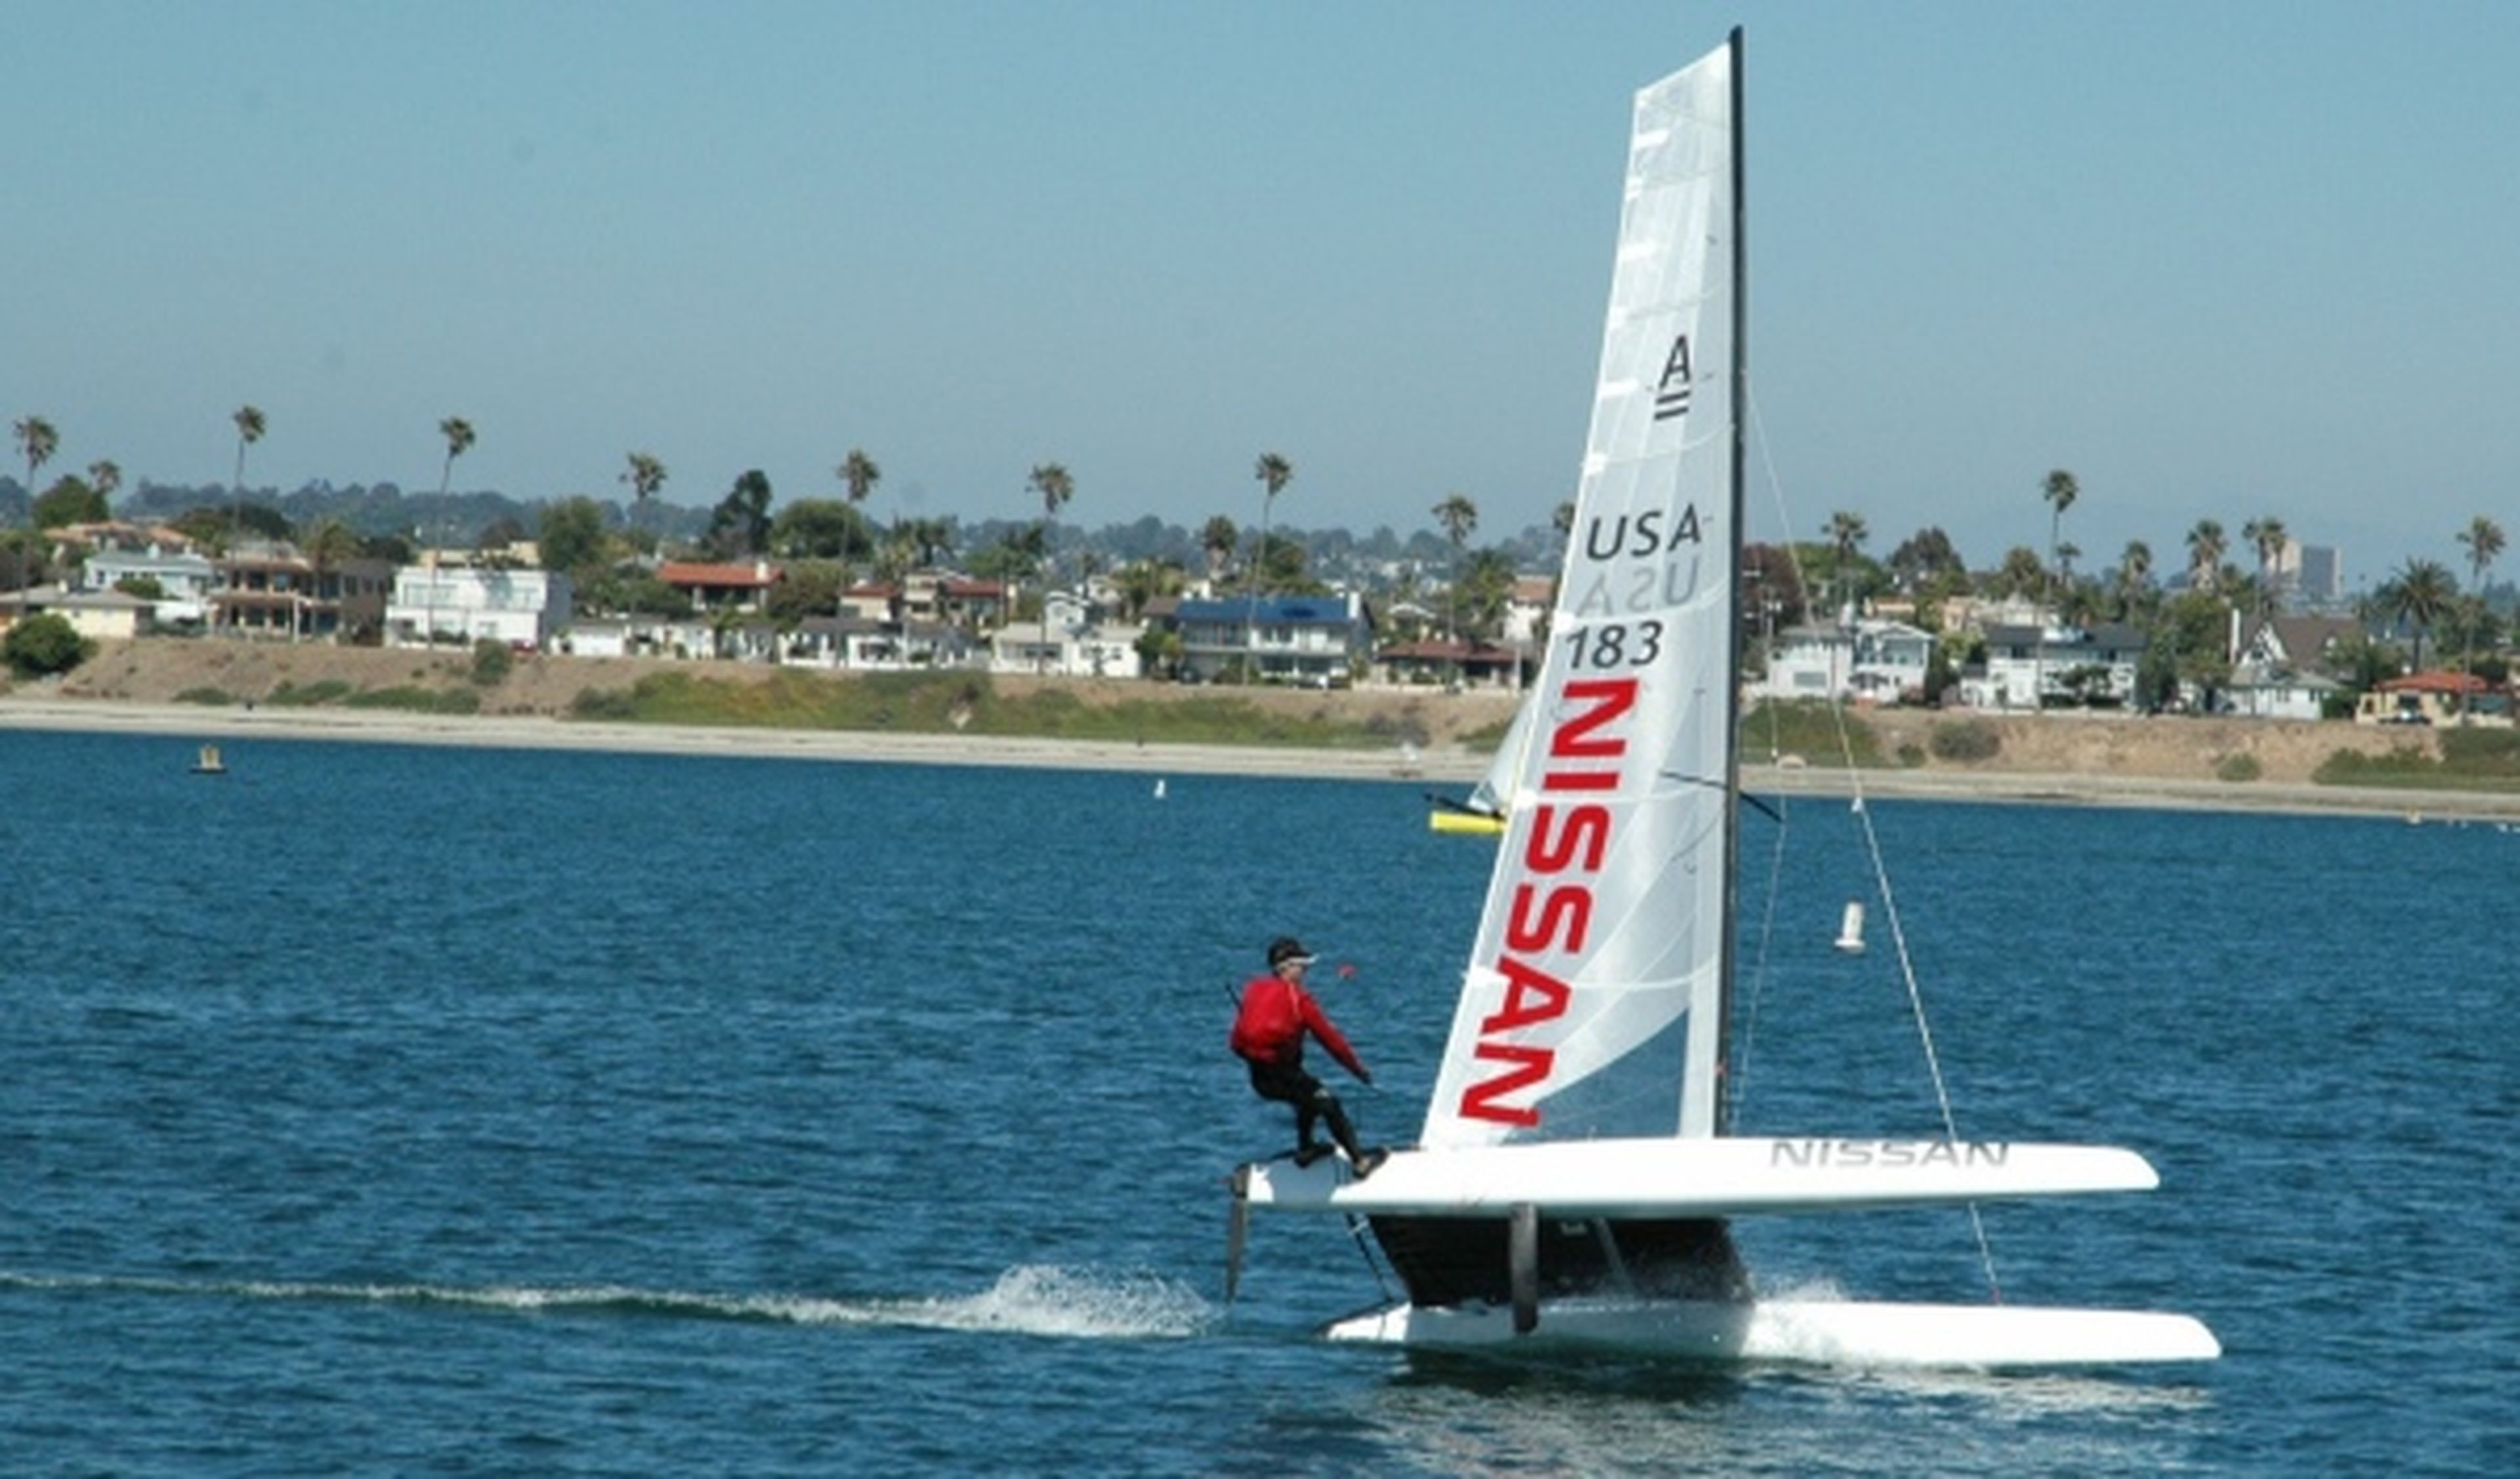 Nissan fabrica un catamarán de competición